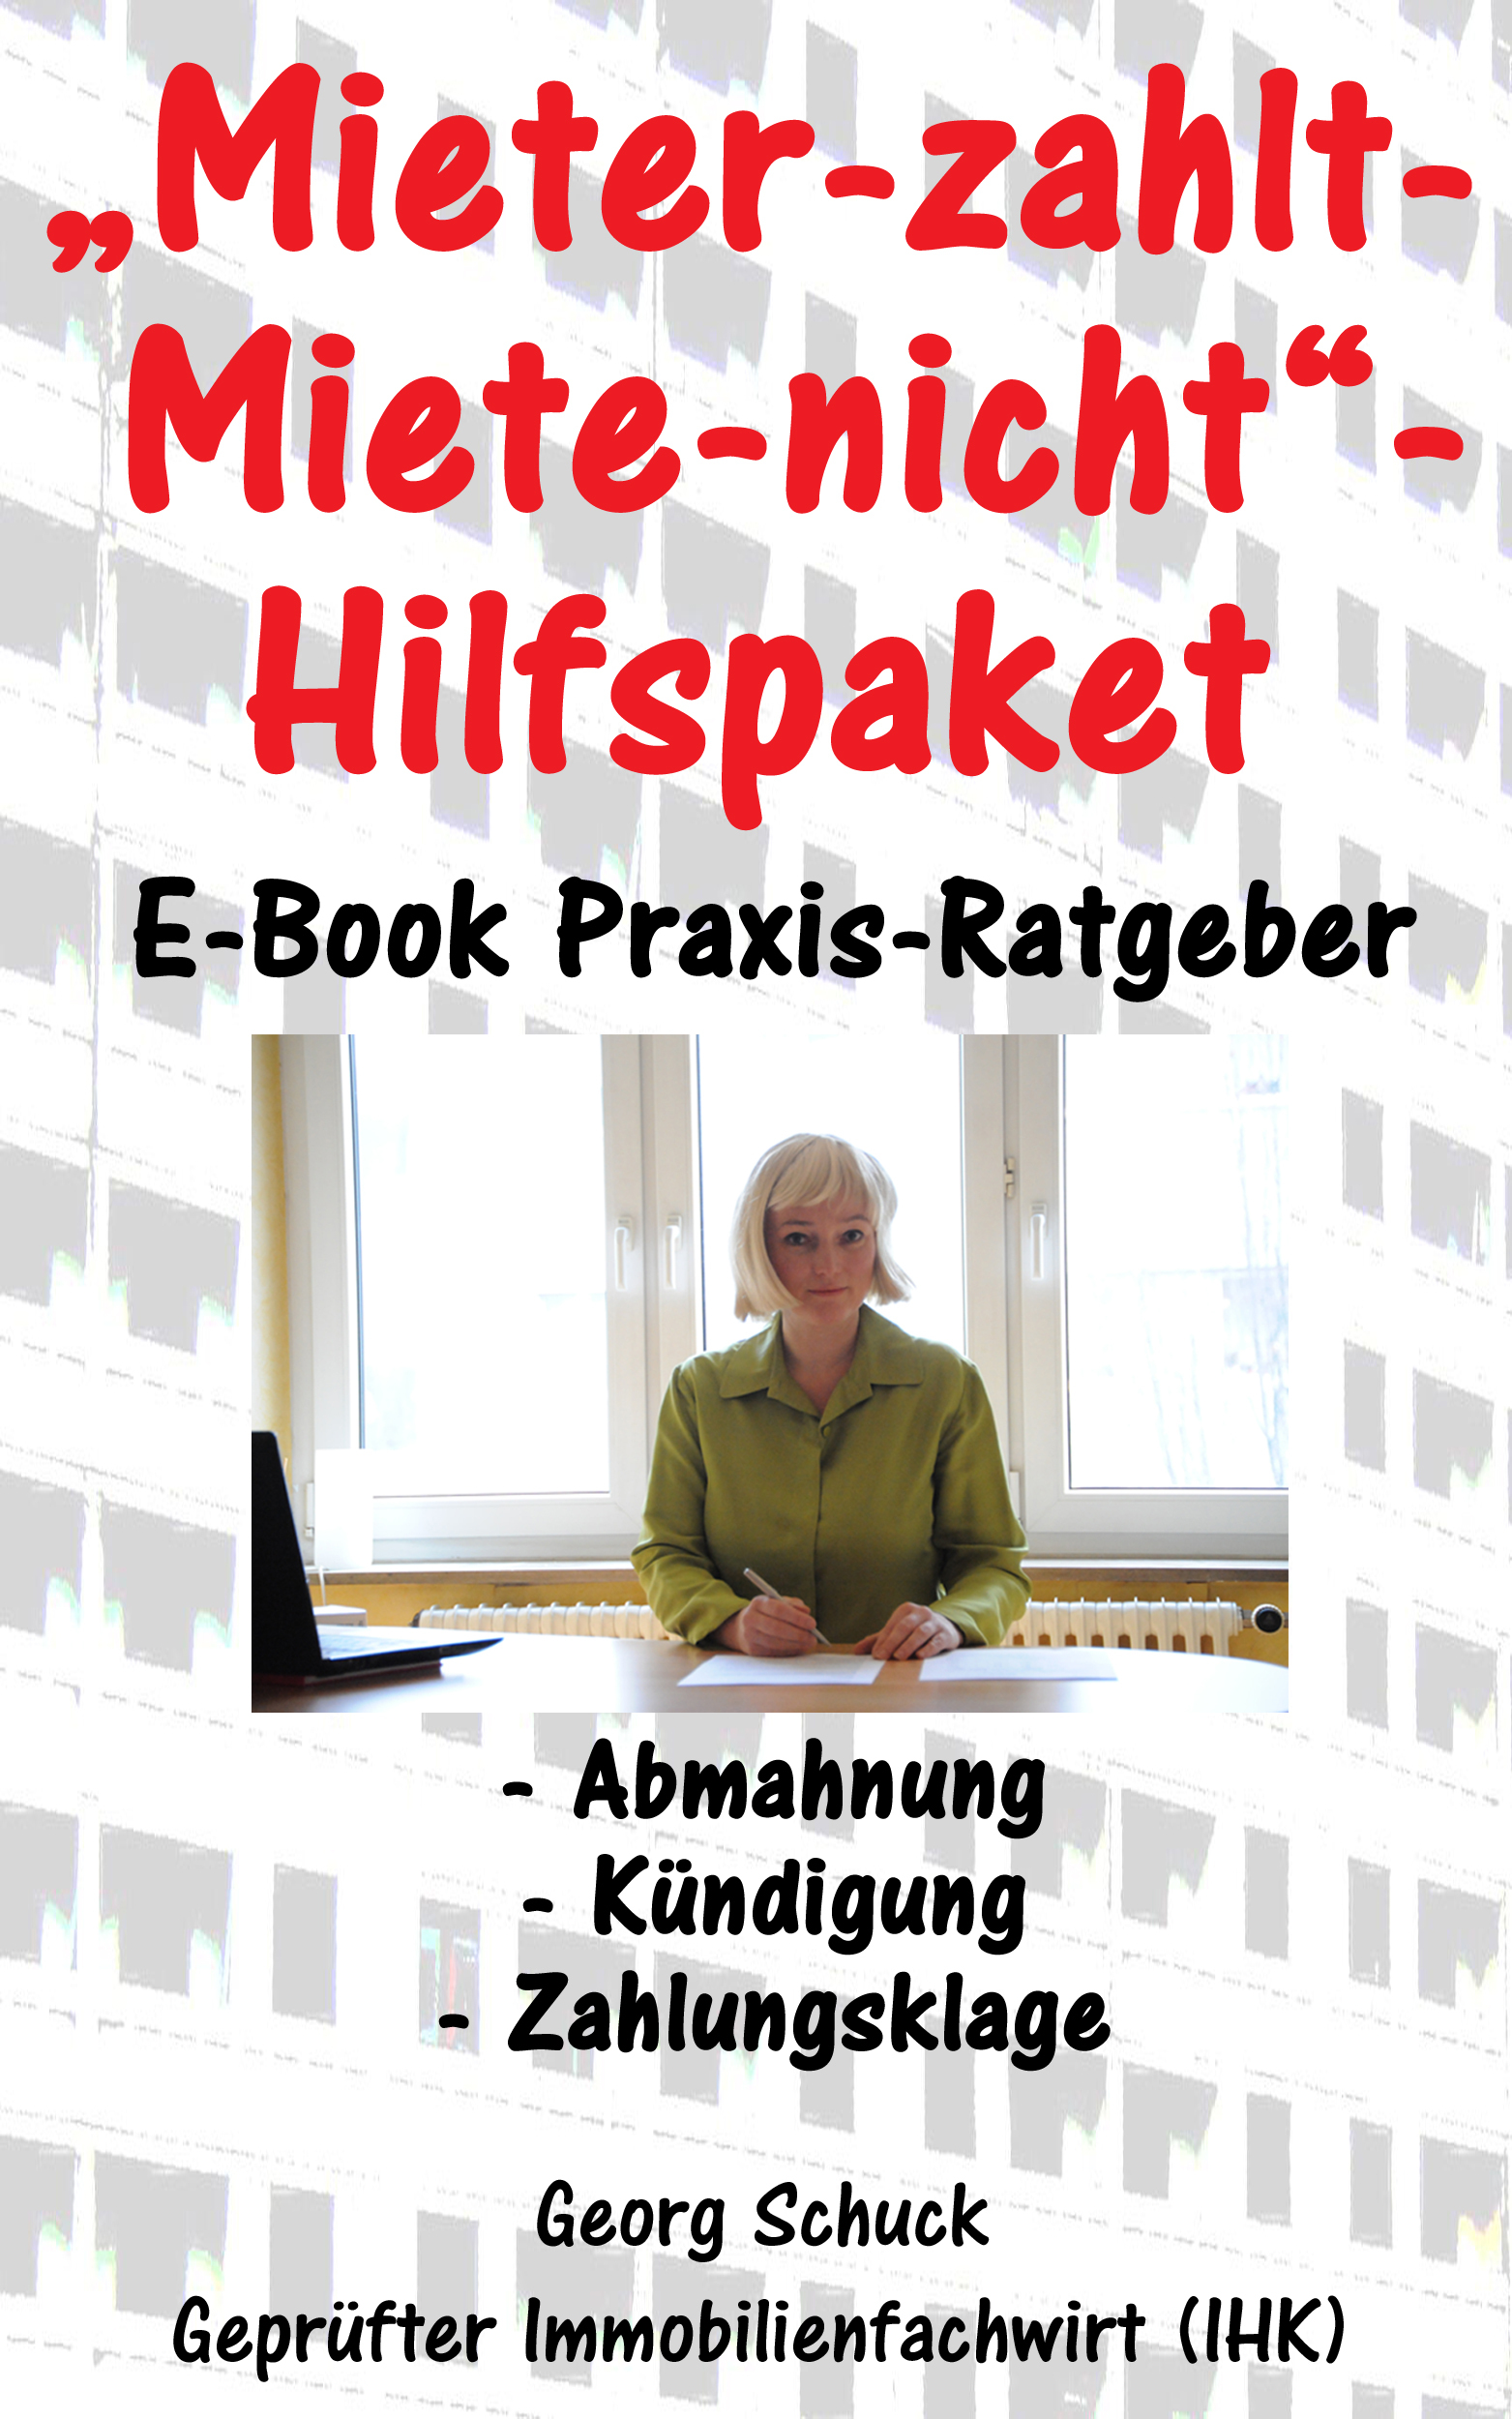 E-Book zum Mieter-zahlt-Miete-nicht-Hilfspaket erhältlich bei Amazon Kindle - Autor: Georg Schuck